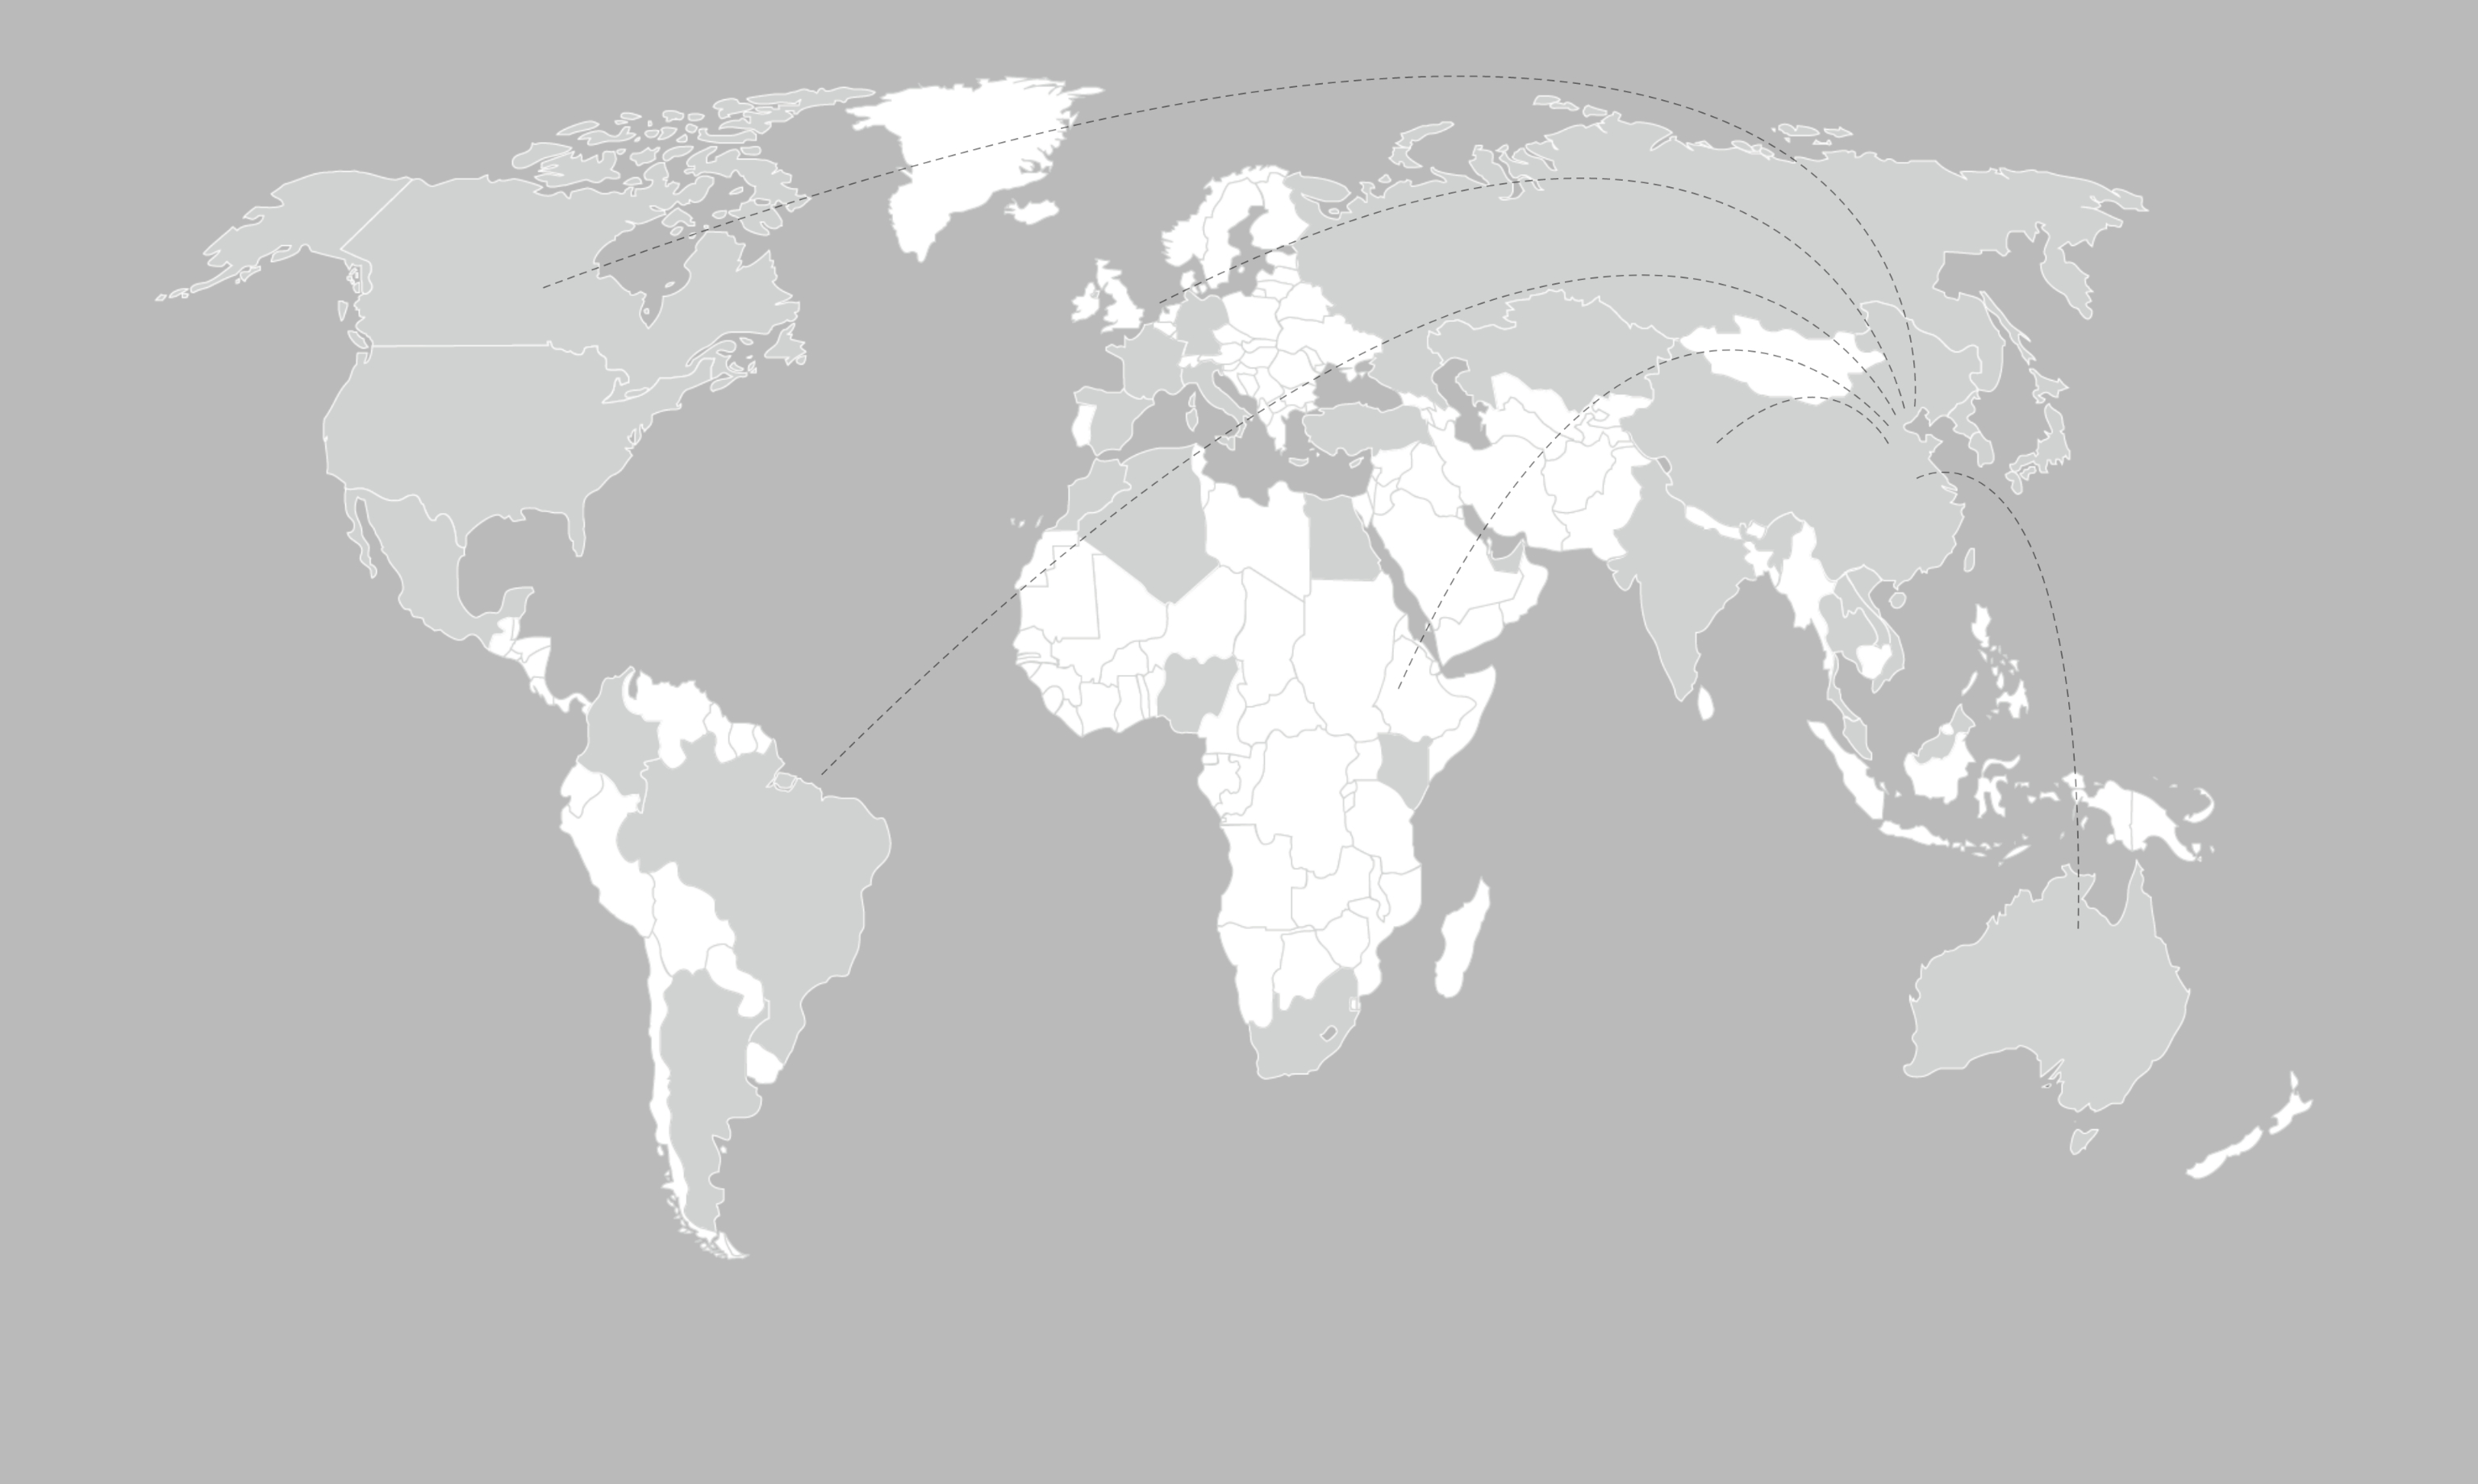 ¡Los productos de INTCO cubrieron 120 países y áreas!